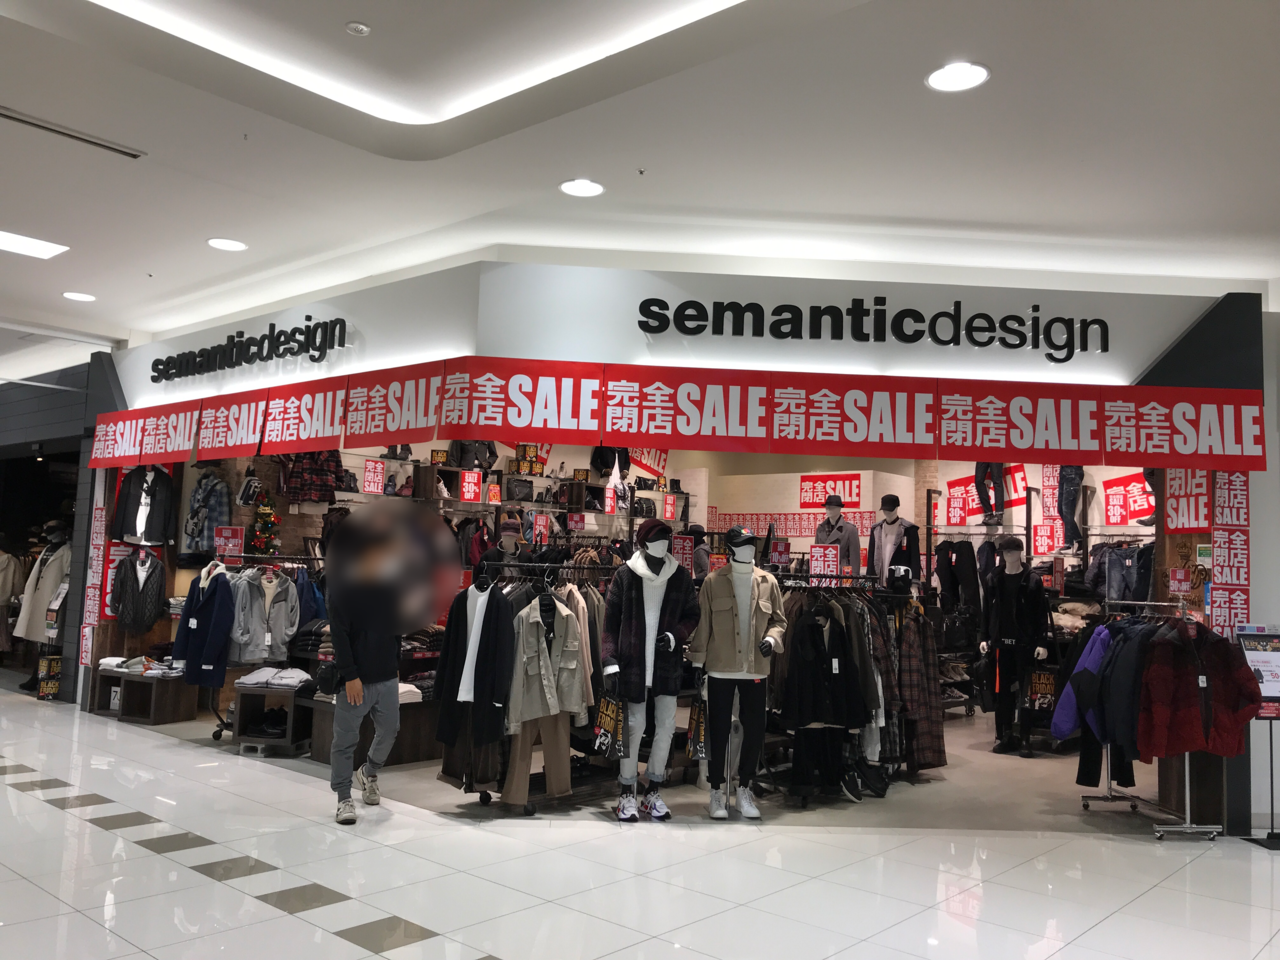 鈴鹿市 メンズファッション Semanticdesign セマンティックデザイン が閉店セールを行っています 号外net 鈴鹿市 亀山市